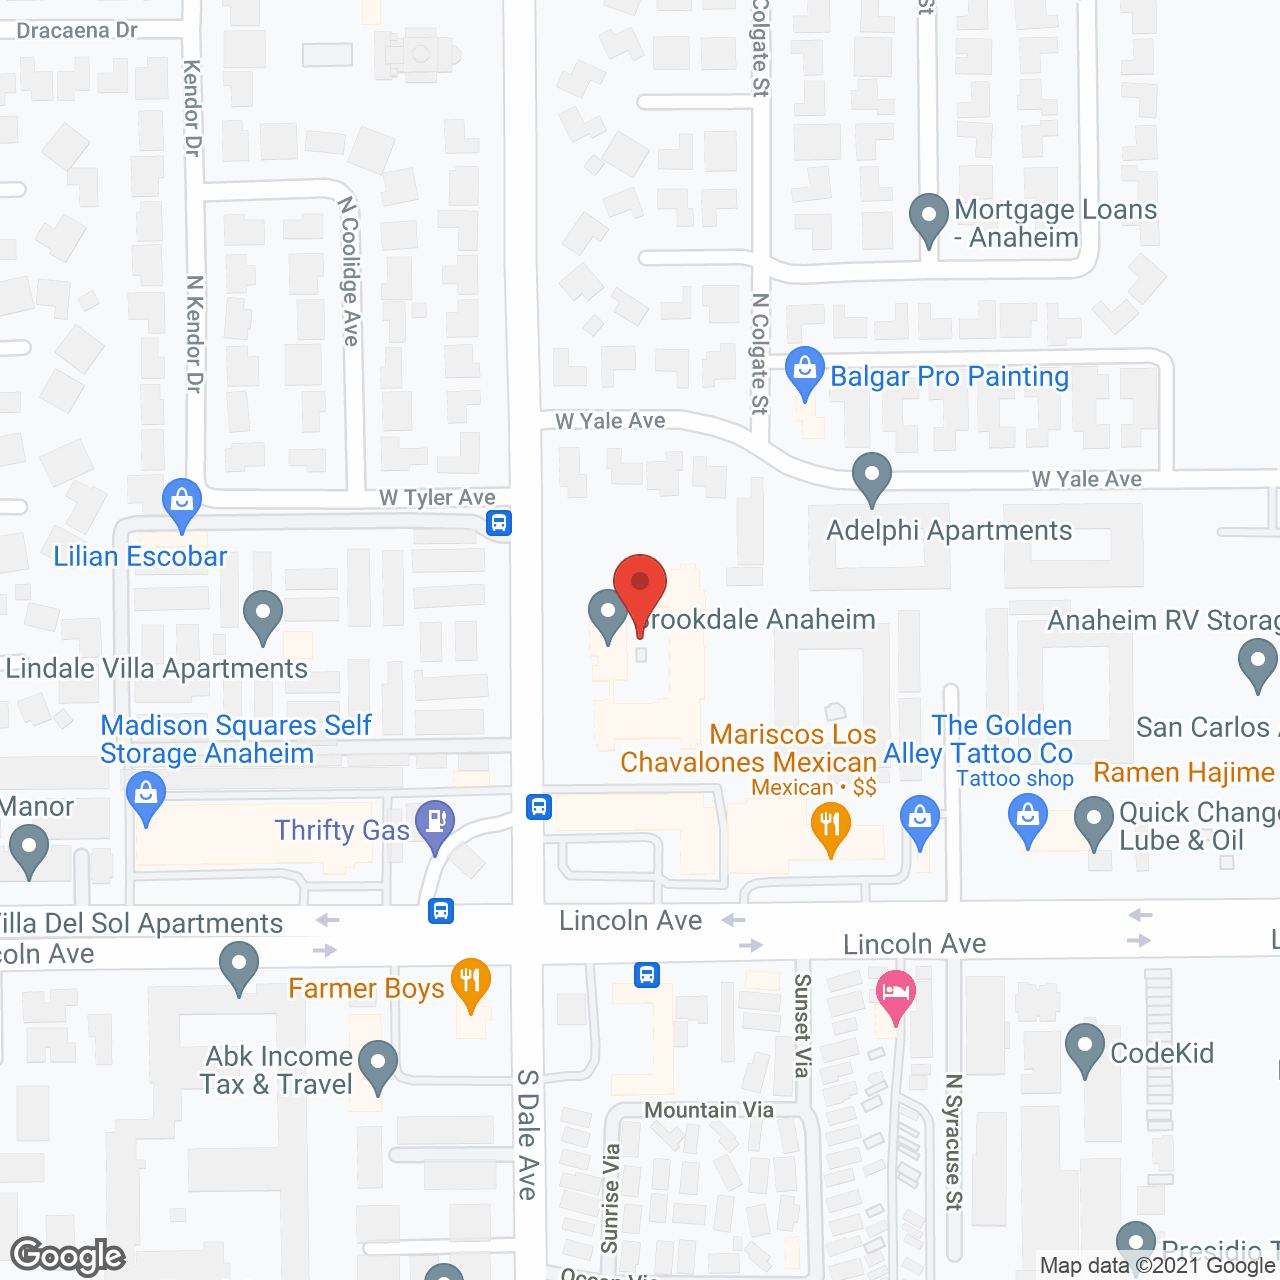 Brookdale Anaheim in google map